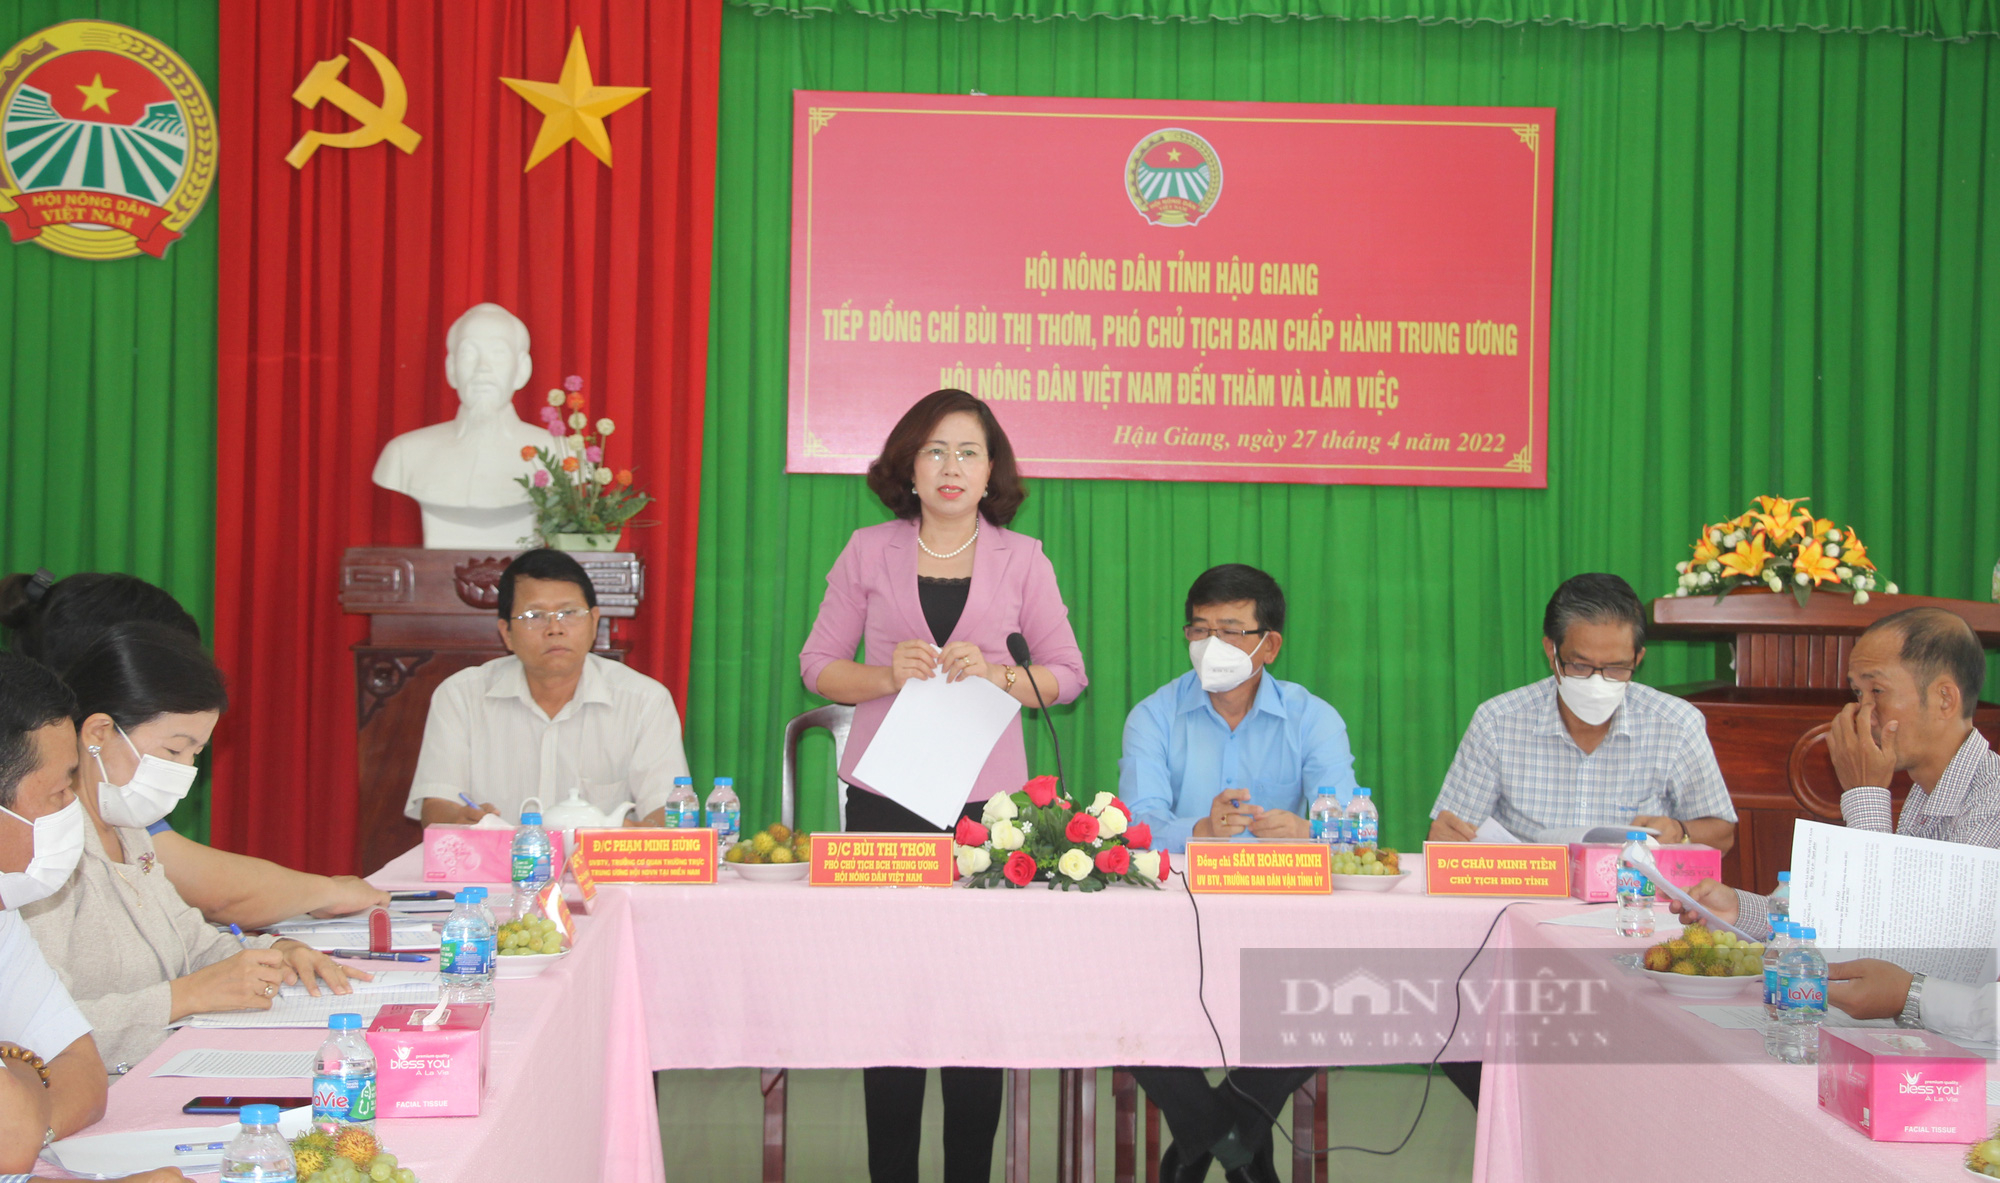 Phó Chủ tịch Hội NDVN Bùi Thị Thơm: Cần quan tâm hơn đến câu chuyện tiêu thụ nông sản cho nông dân Hậu Giang - Ảnh 1.